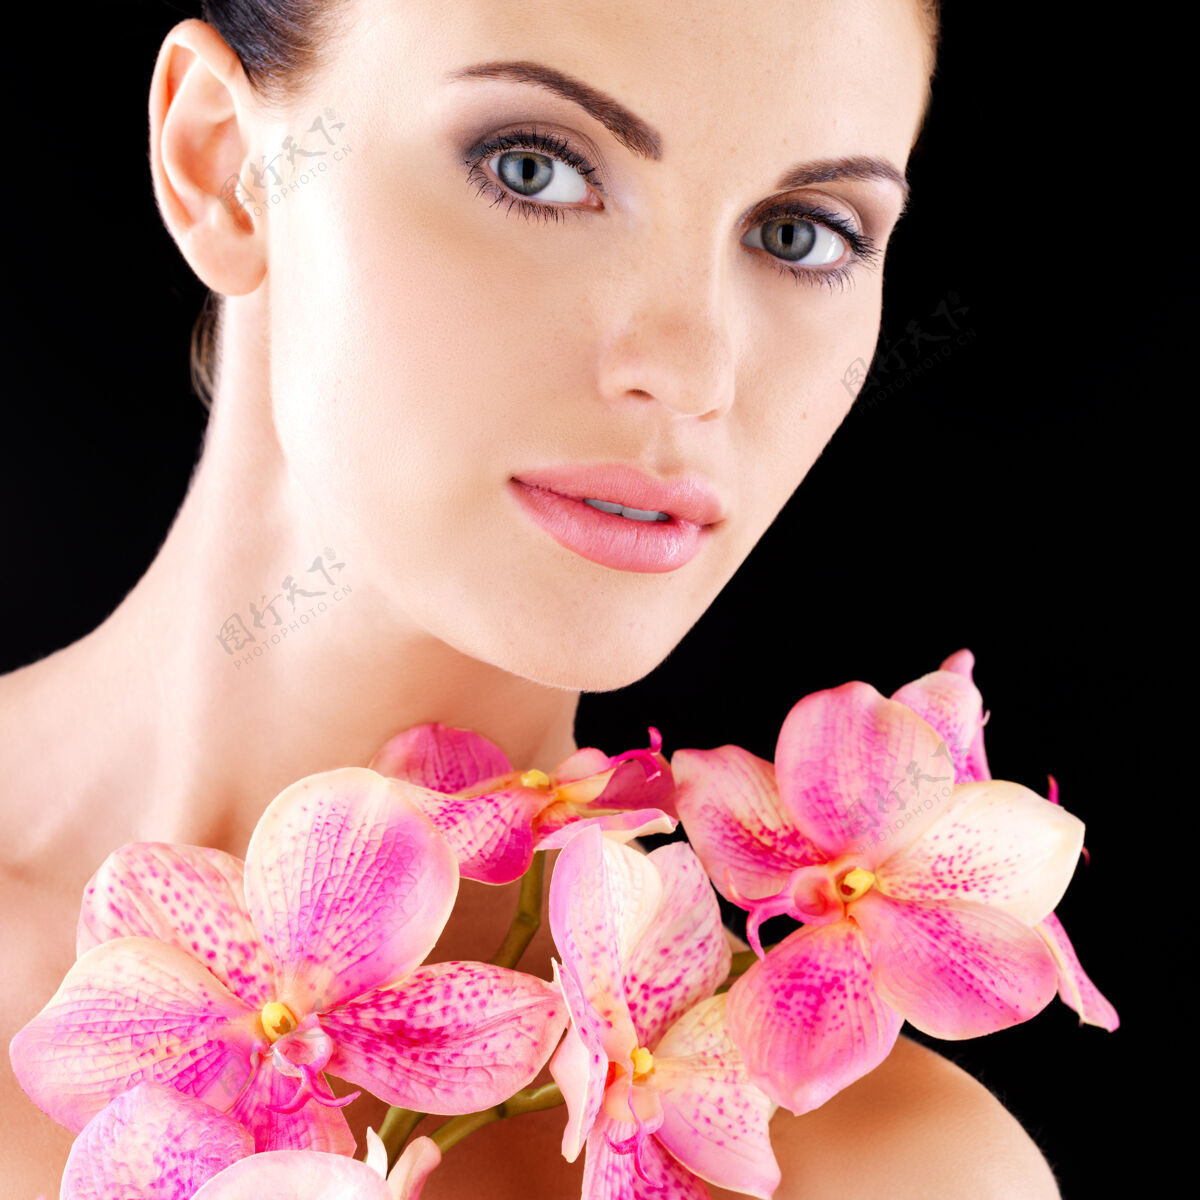 干净一个拥有健康皮肤和粉色花朵的成年女性的美丽脸庞-工作室背景皮肤护理美容治疗